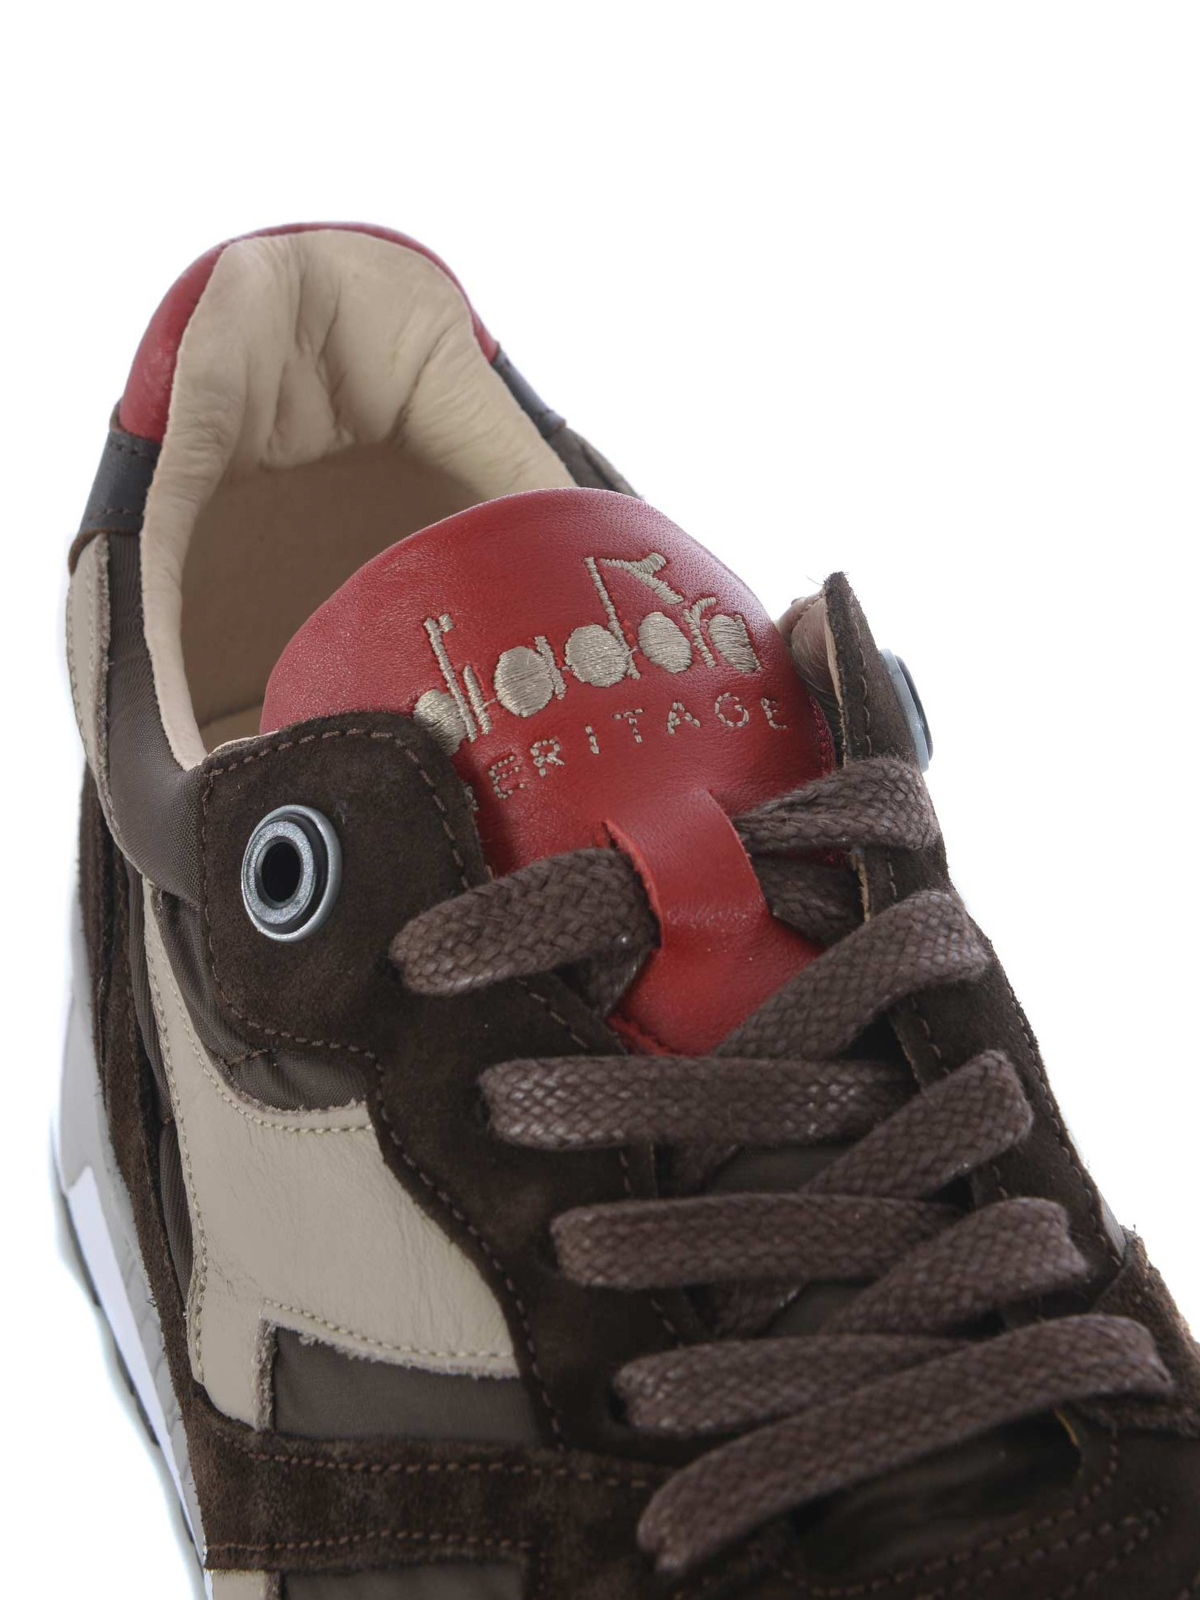 Diadora Heritage - N9000 brown sneakers 